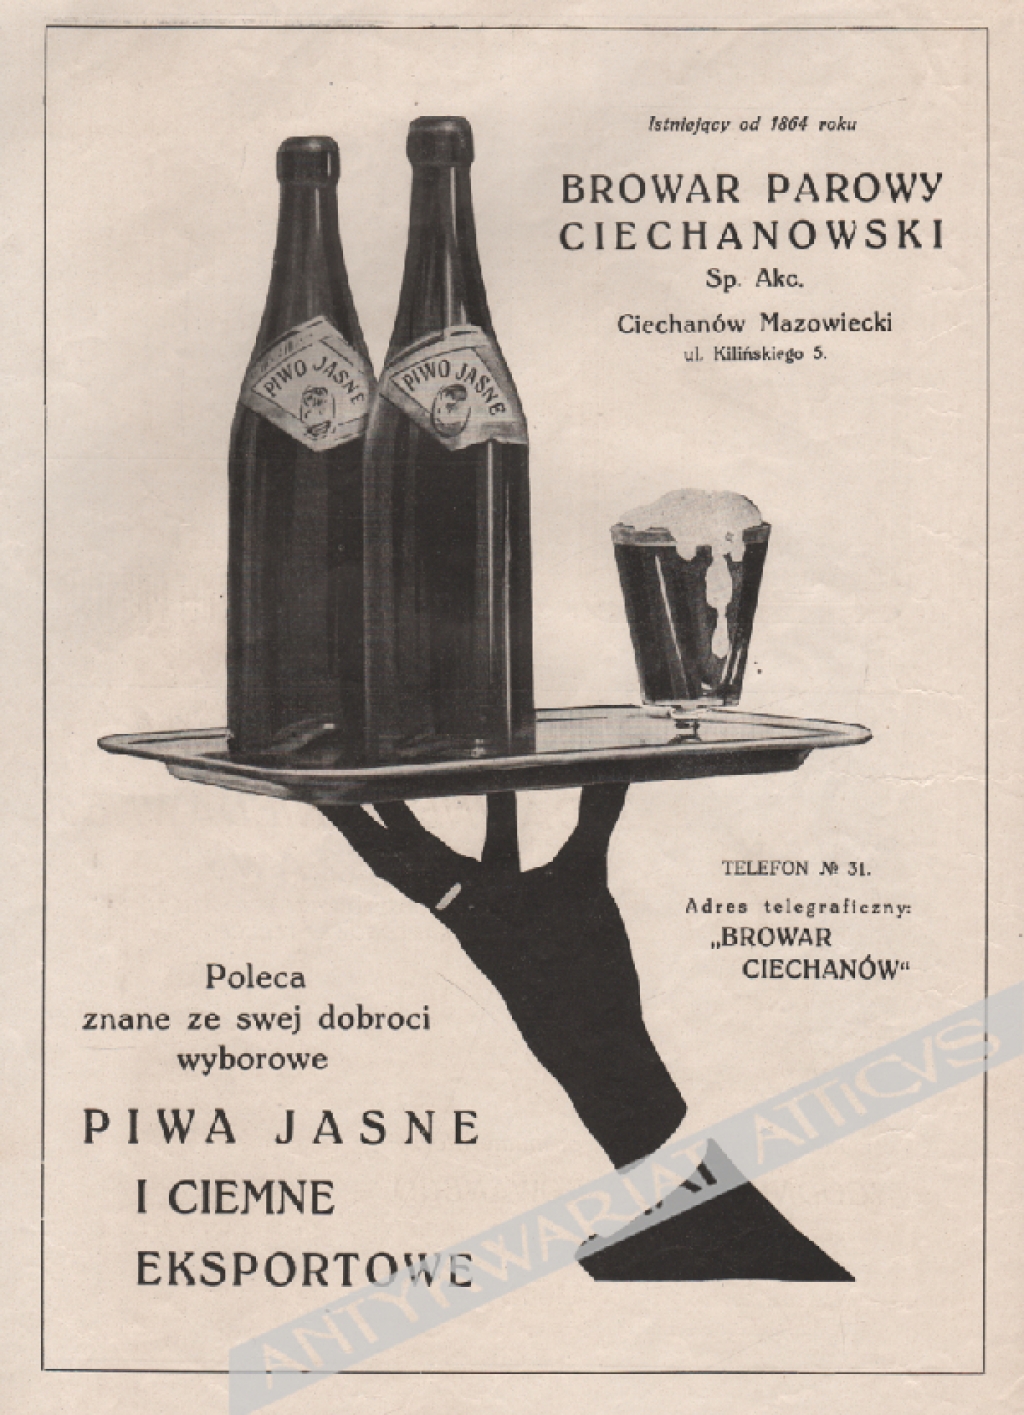 [reklama, 1929] Istniejący od 1864 roku Browar Parowy Ciechanowski Sp. Akc.